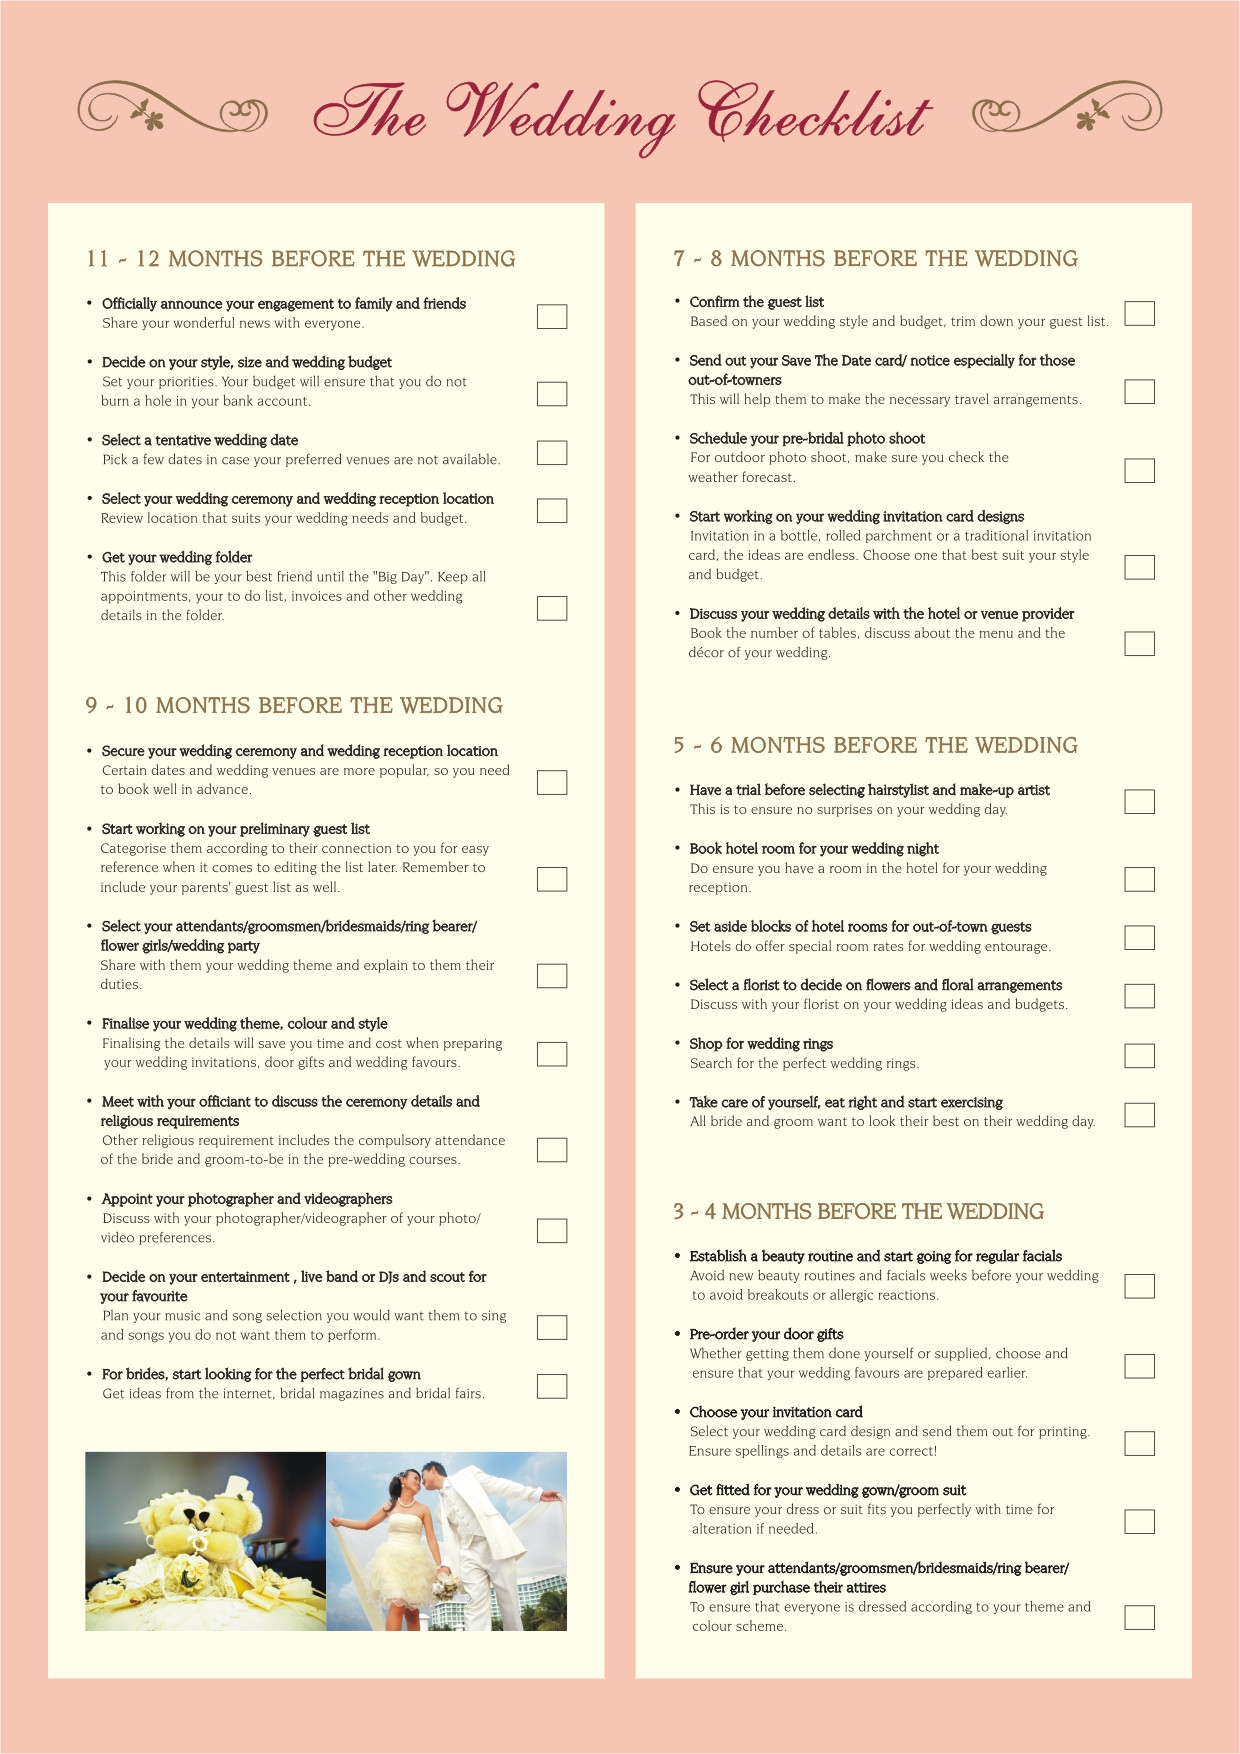 DIY Backyard Wedding Checklist
 Planning a backyard wedding checklist